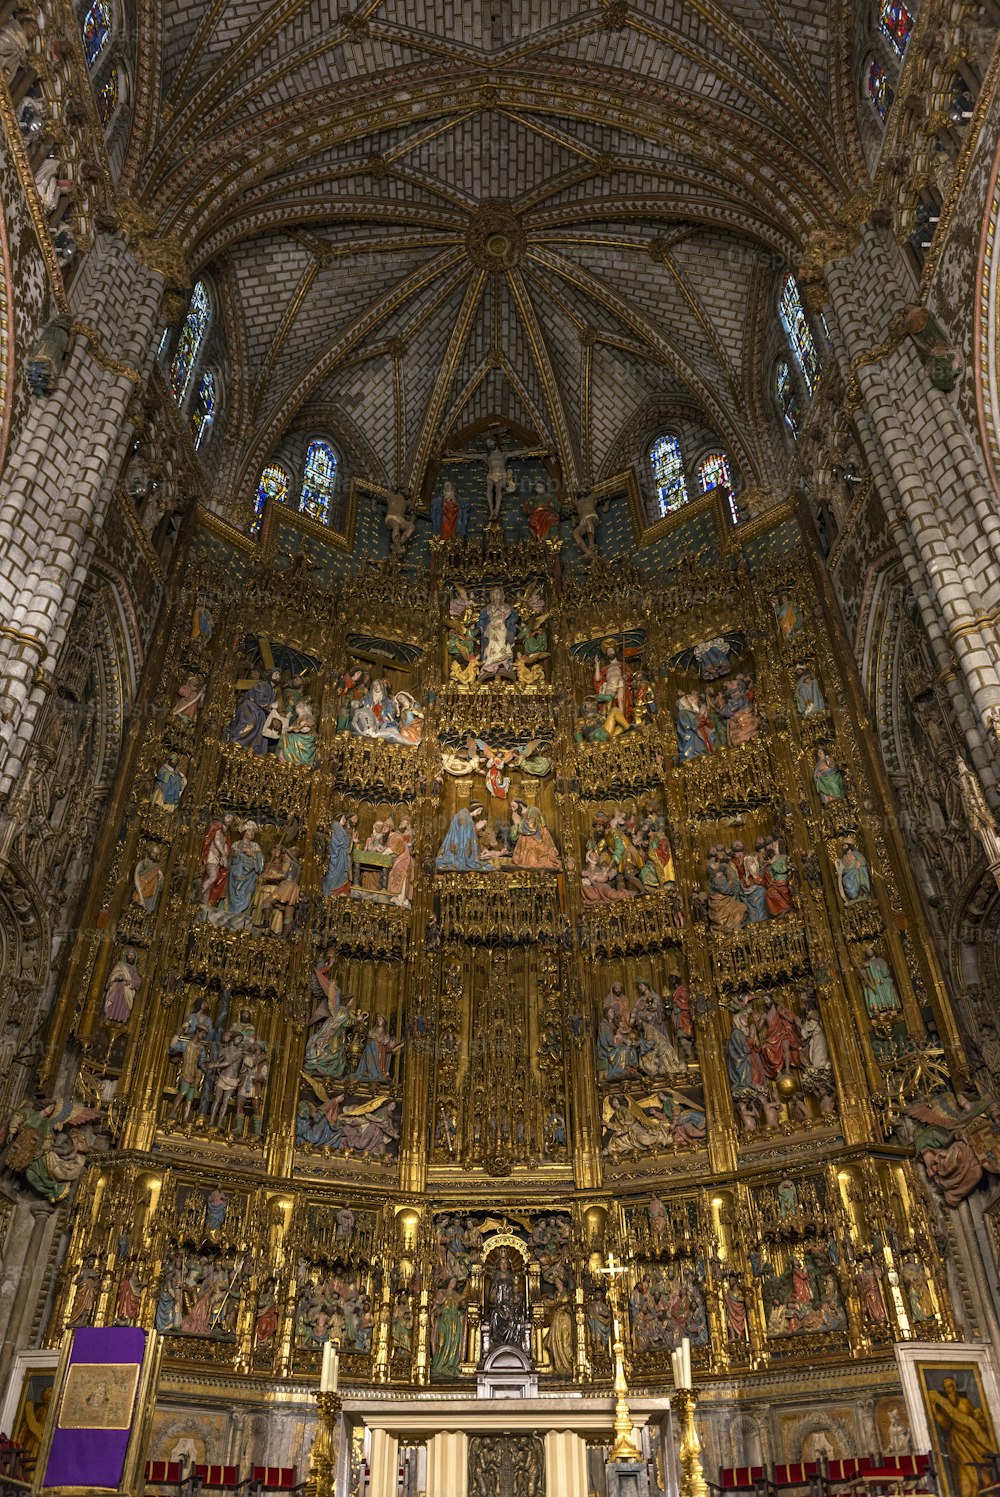 トレド大聖堂(トレドの聖マリア霊長類大聖堂)のテーブルと高祭壇の内部図、非常に華やかなゴシック様式の祭壇画、そしてこの芸術的スタイルの最後の例の1つ。トレドの大聖堂は、スペインの3つの13世紀のハイゴシック様式の大聖堂の1つであり、スペインのゴシック様式の最高傑作と見なされています。